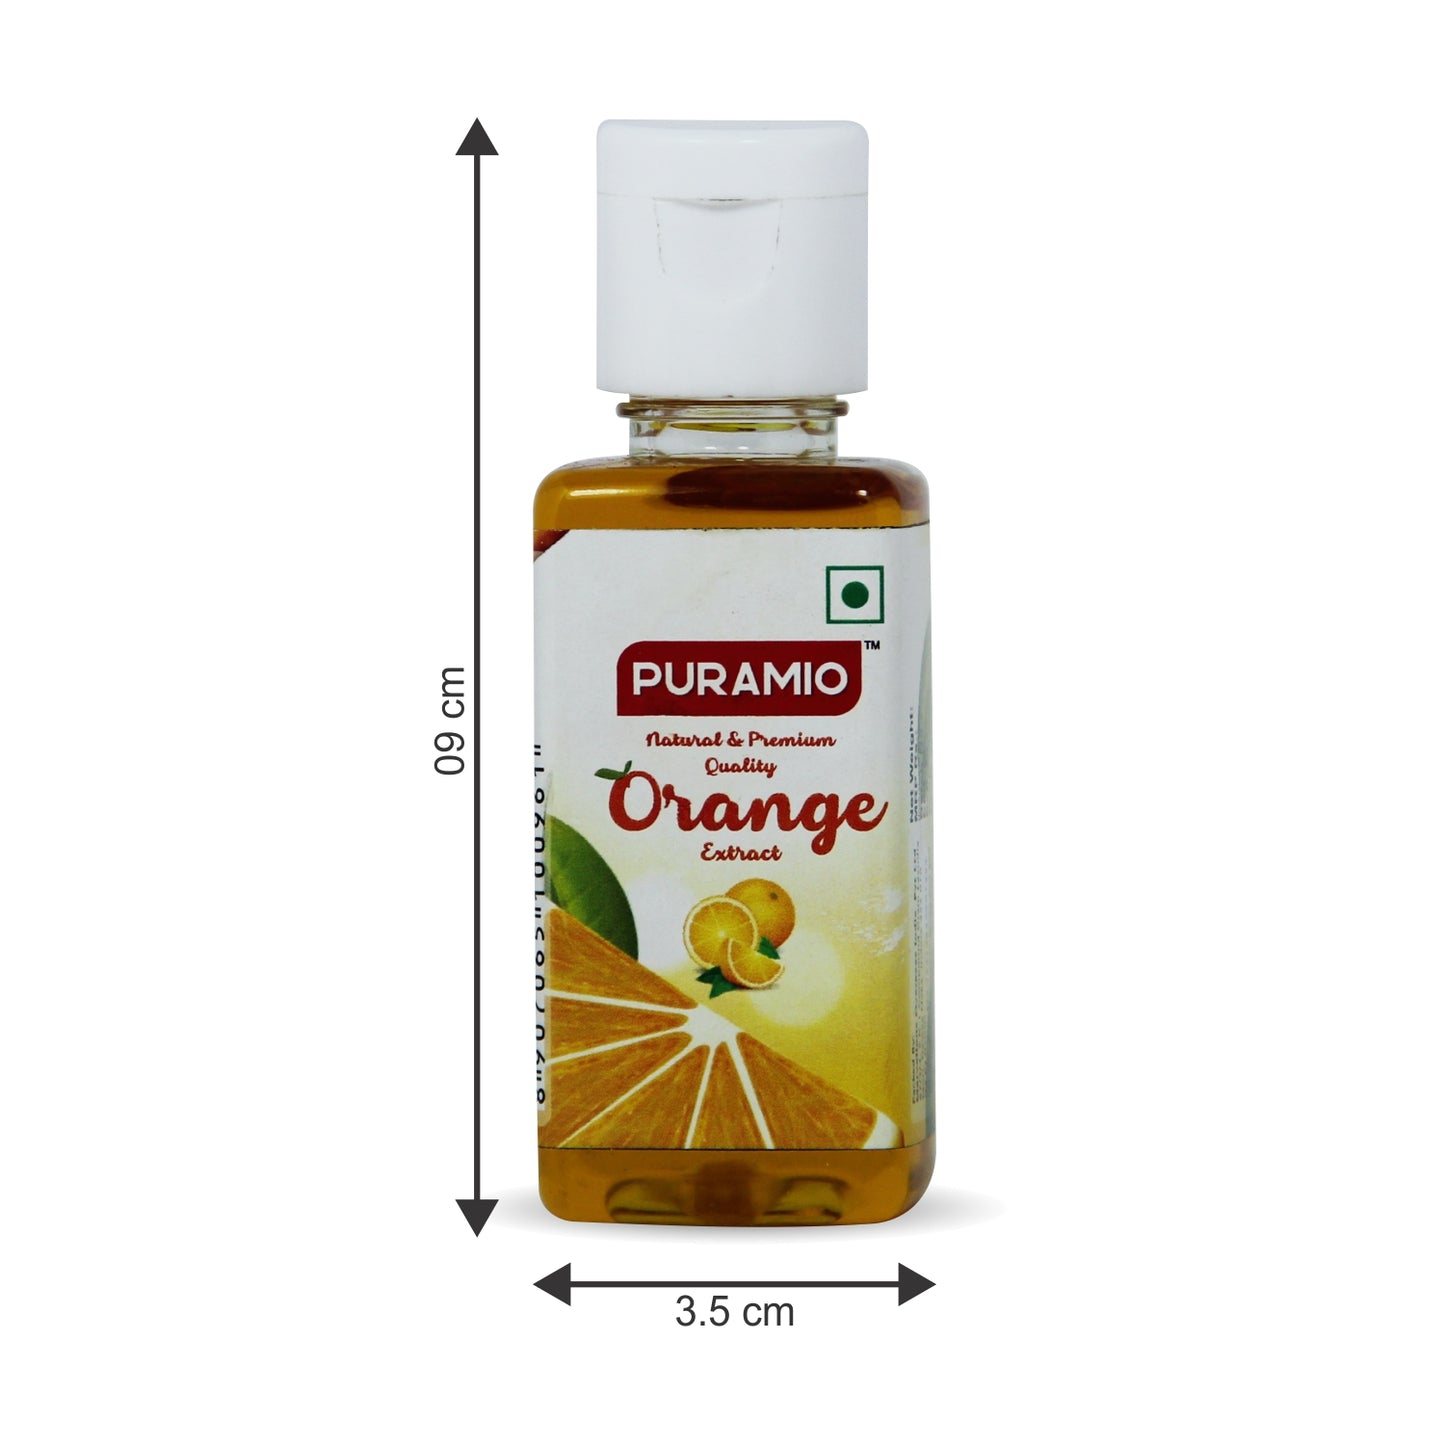 Puramio Natural & Premium Orange Extract , 50ml